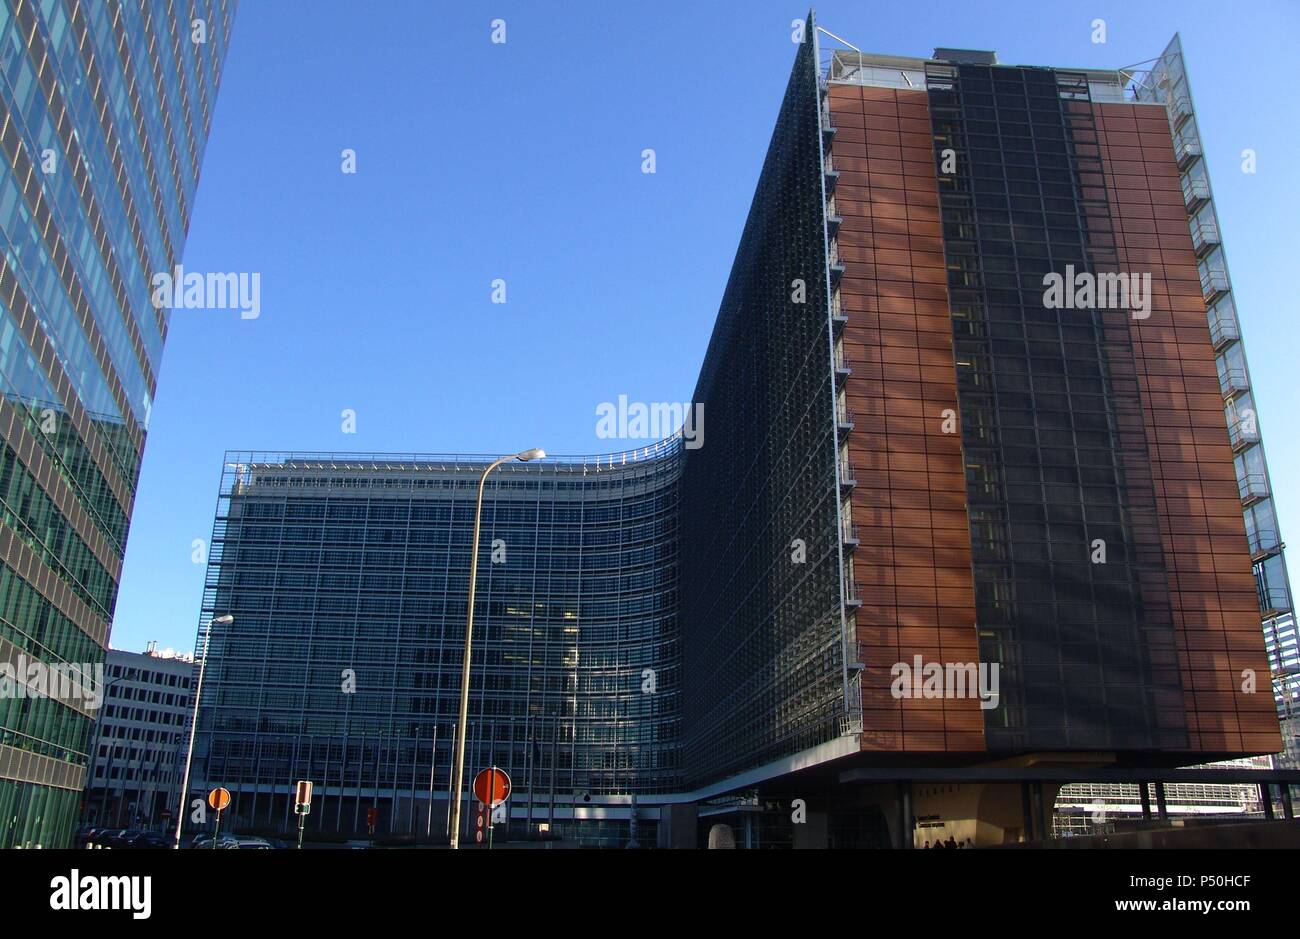 SEDE PRINCIPAL DE LA COMISION EUROPEA. Ubicada en el Edificio Berlaymont, construído en la década de 1960 por el arquitecto Lucien de Vestel. S. XX. Bruselas. Bélgica. Stock Photo